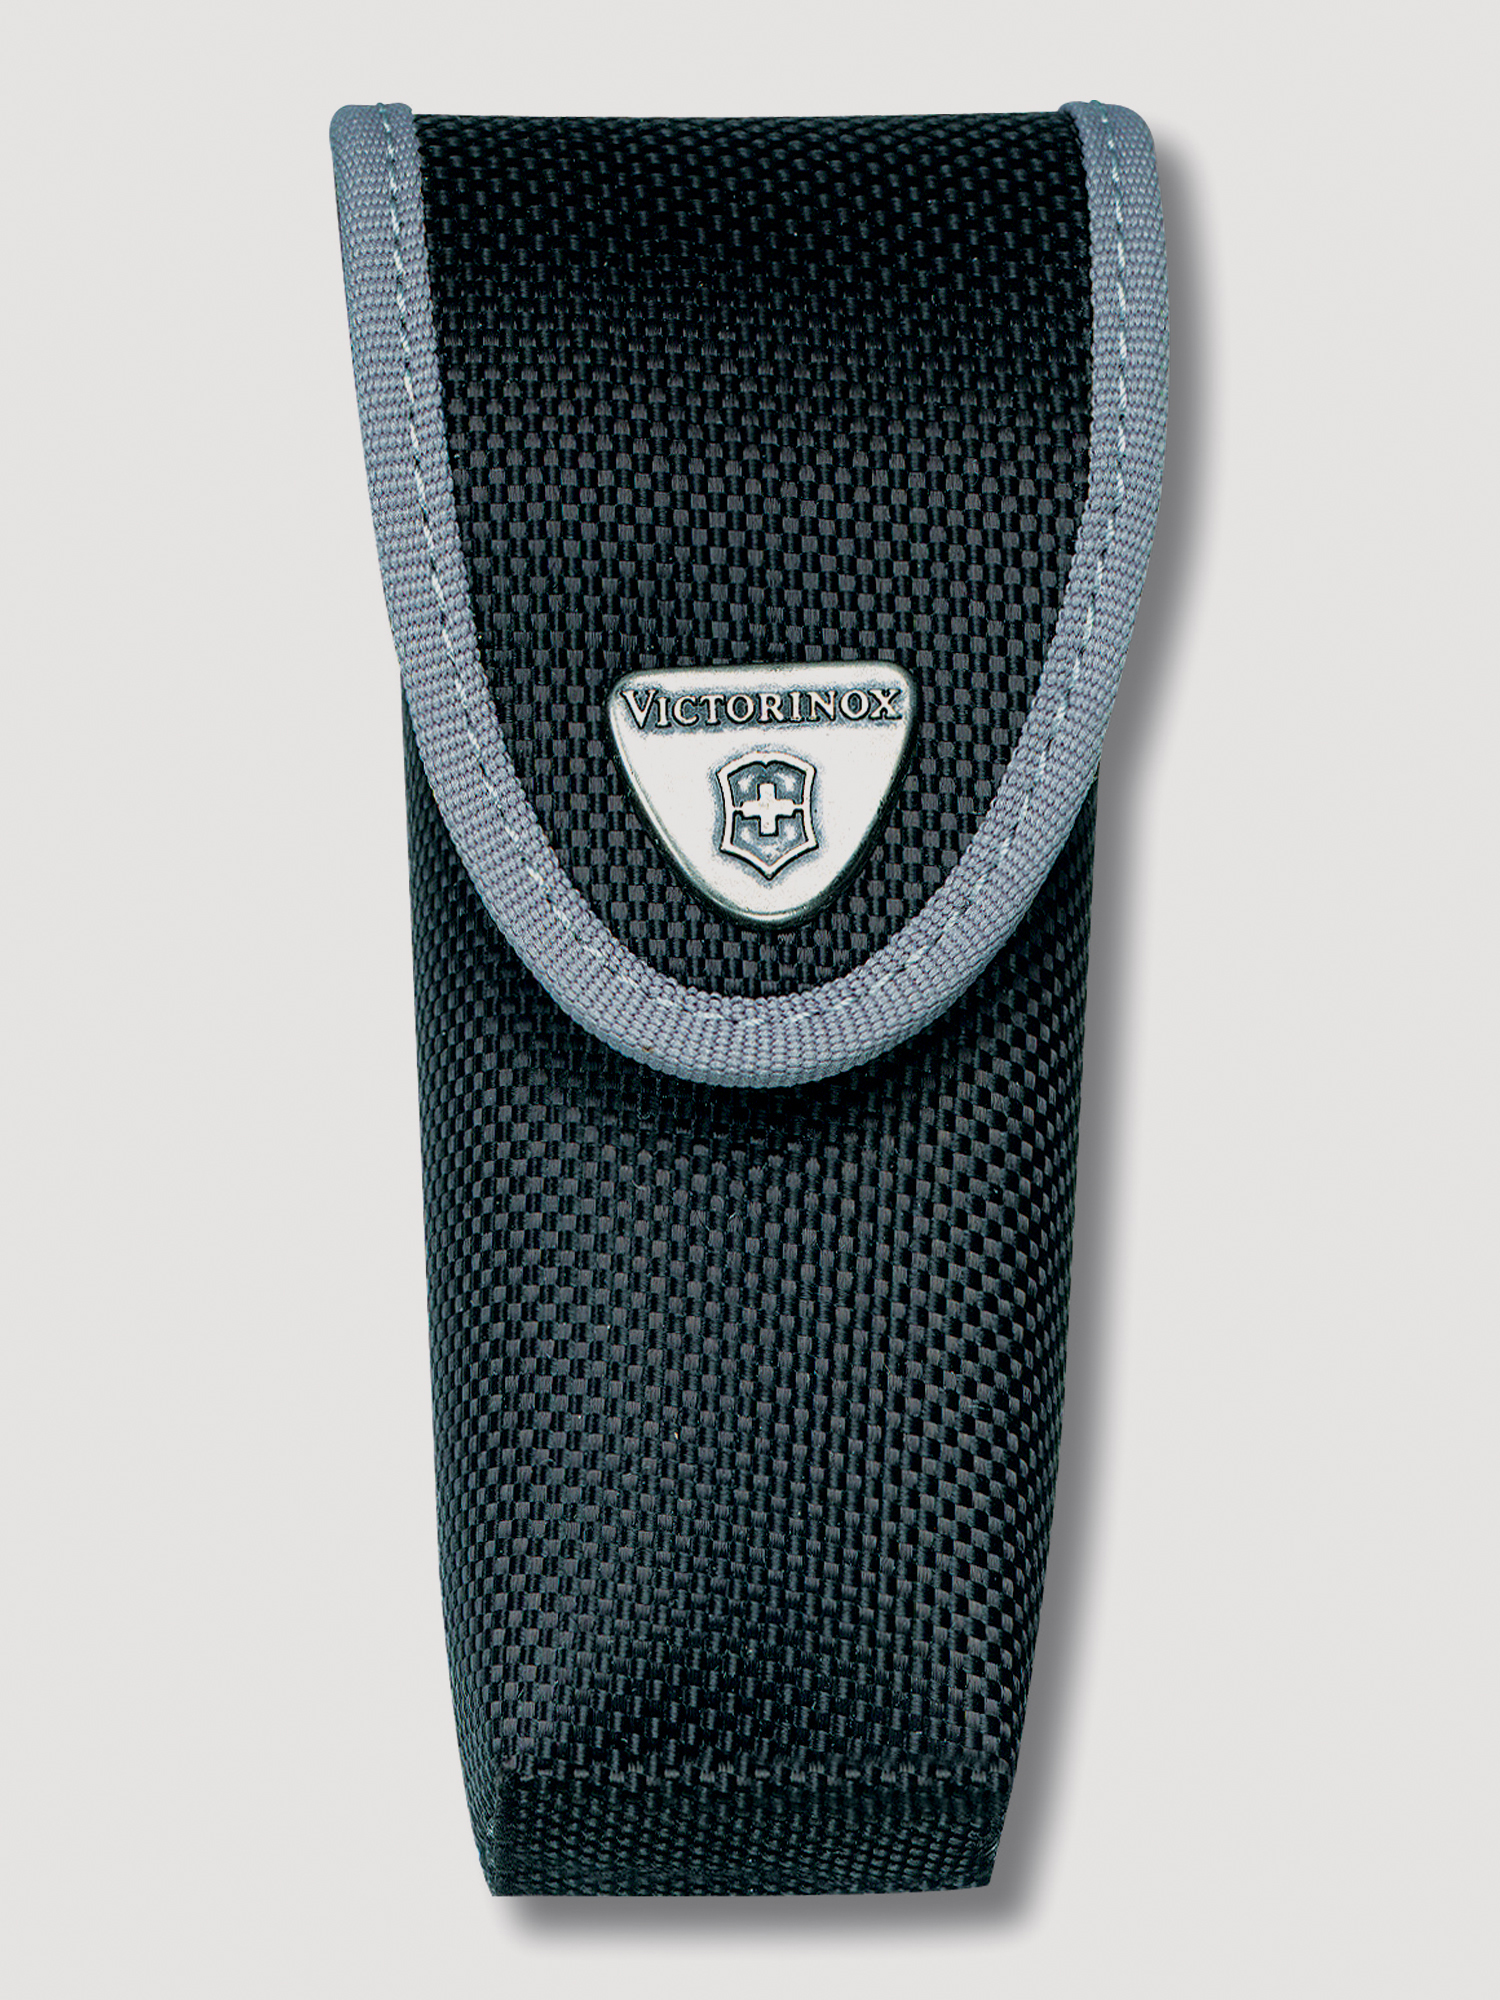 Чехол на ремень VICTORINOX для ножей 111 мм 2-4 уровня, с отделением под фонарь, нейлоновый, чёрный, Черный ремень для подвешивания отягощений к поясу нейлоновый с логотипом profi fit profi fit rt 007